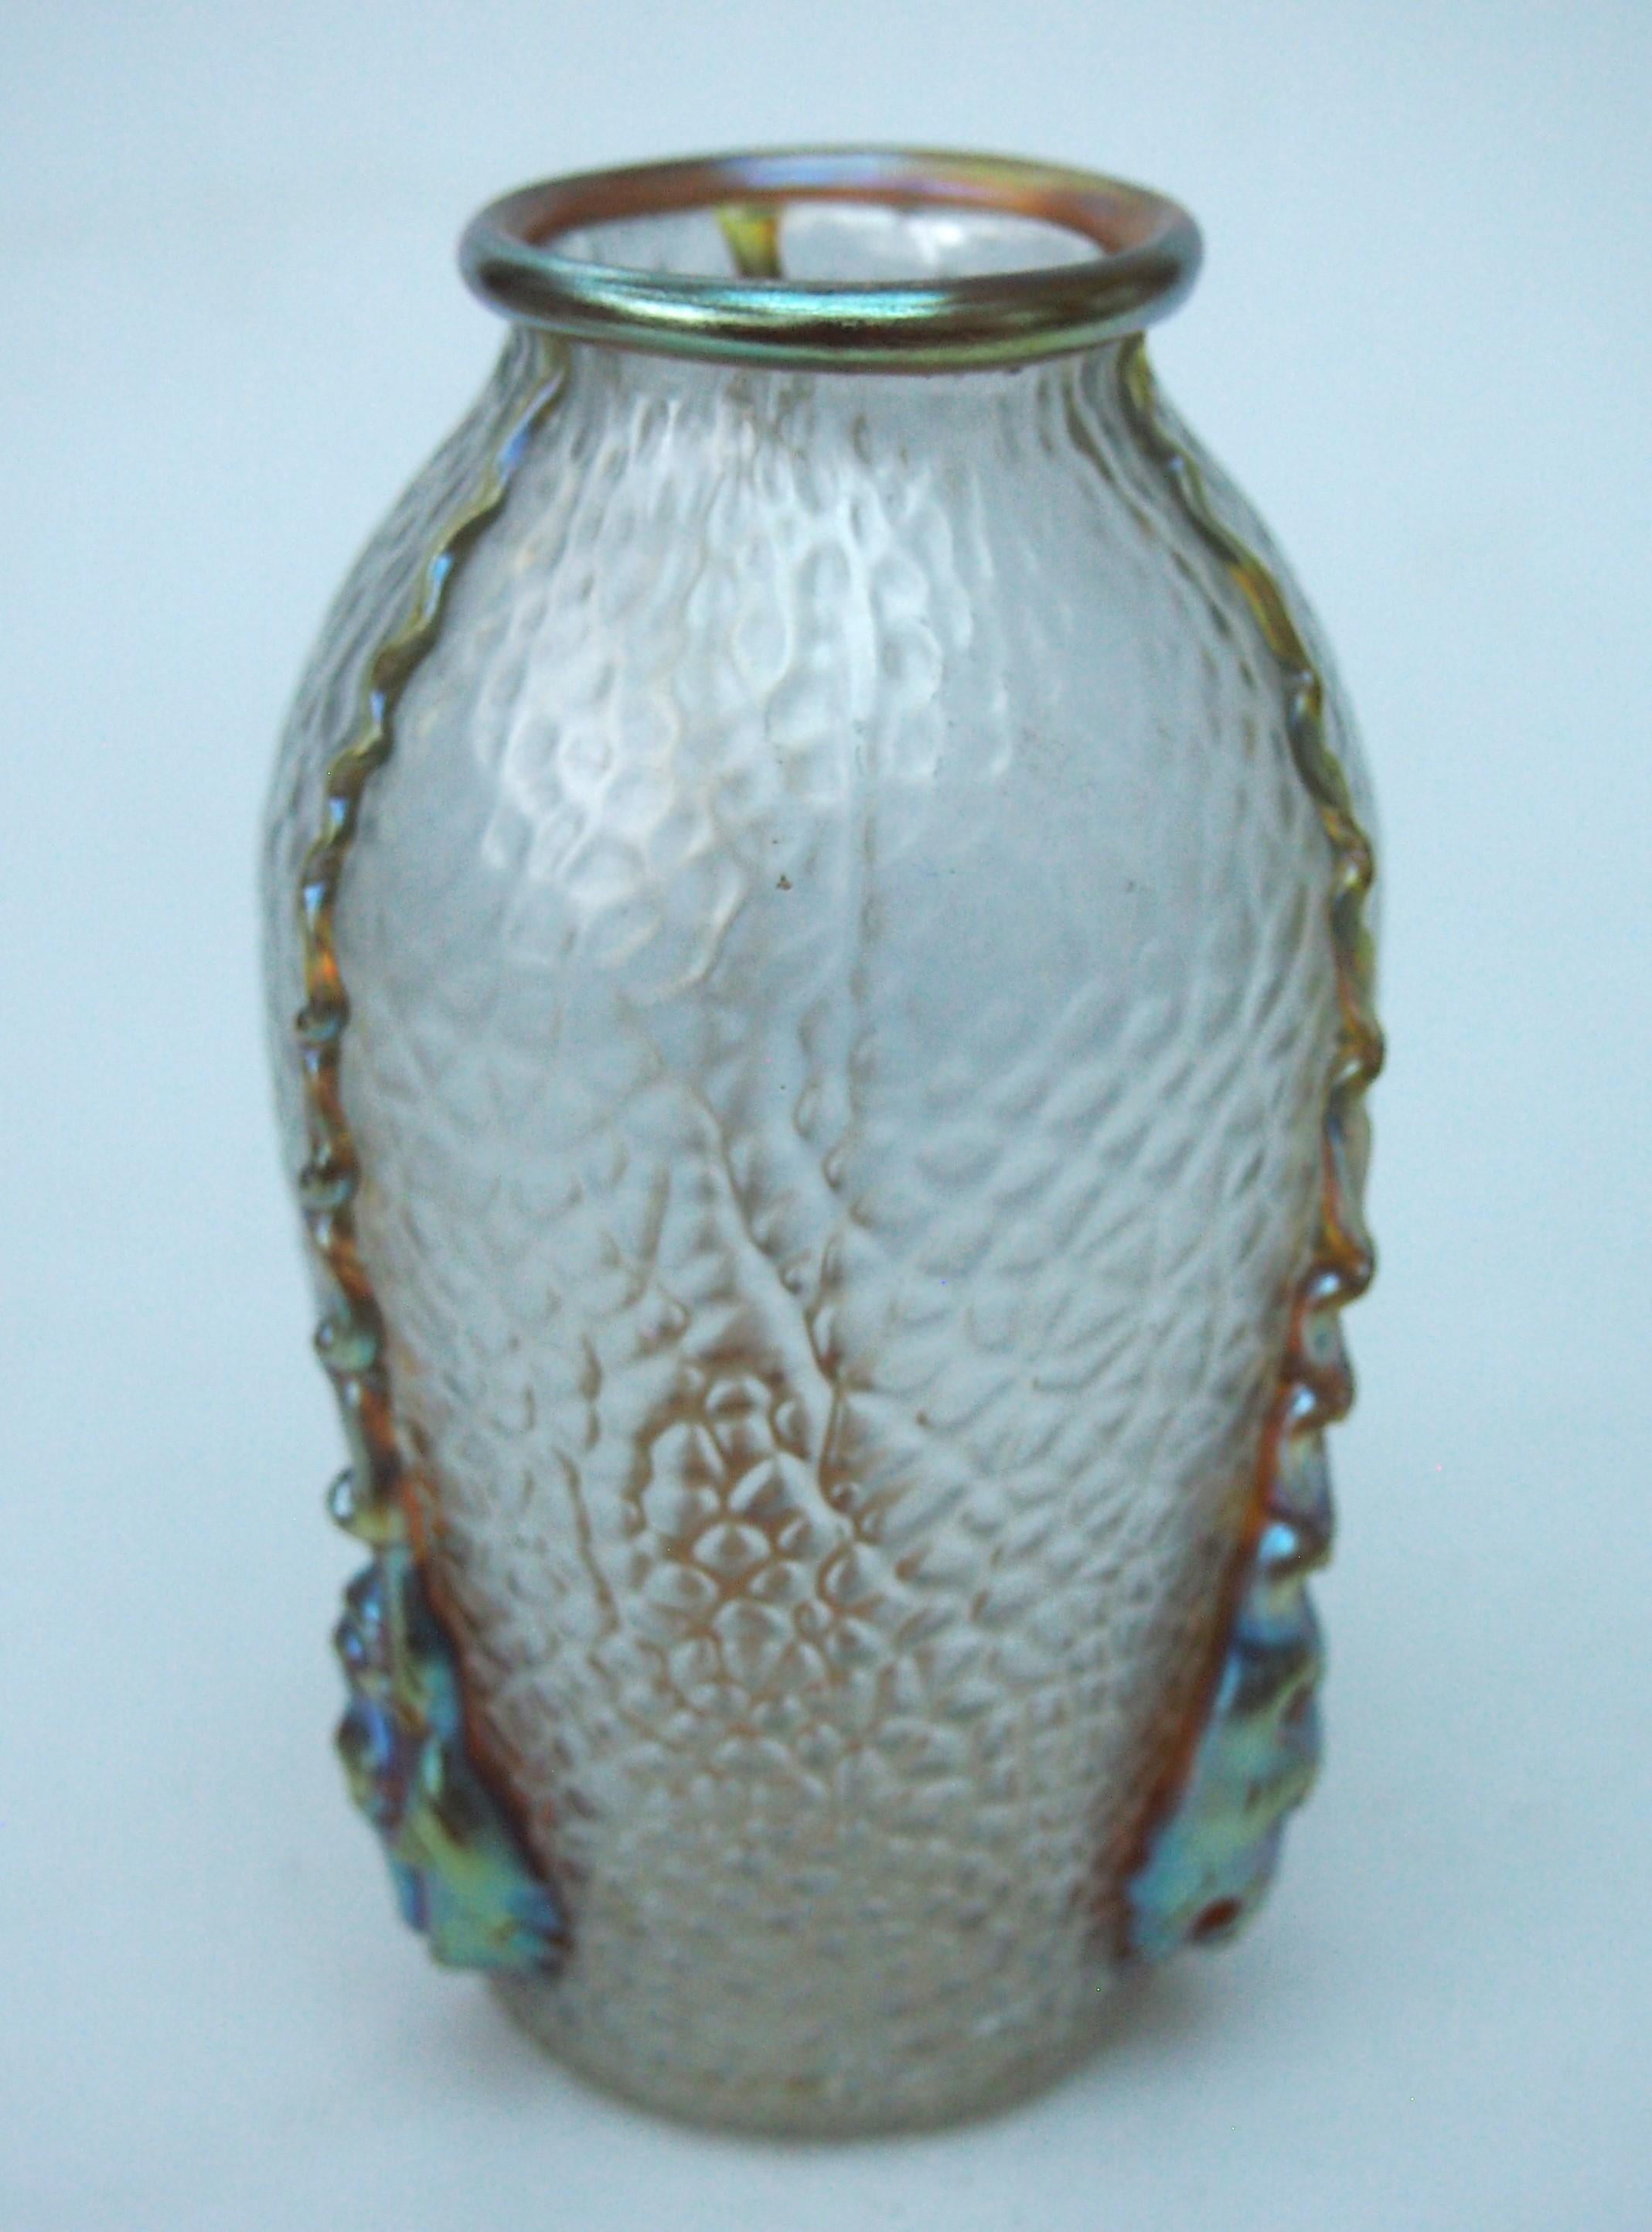 Ikonische kleine Glasvase von Loetz in Candia Martele mit goldenem Glasrand und vier langen, gedrehten, heiß aufgetragenen Kaulquappen, die an den Seiten herunterhängen - ein markantes und unverwechselbares Design namens Nautilus, das 1903 von Loetz